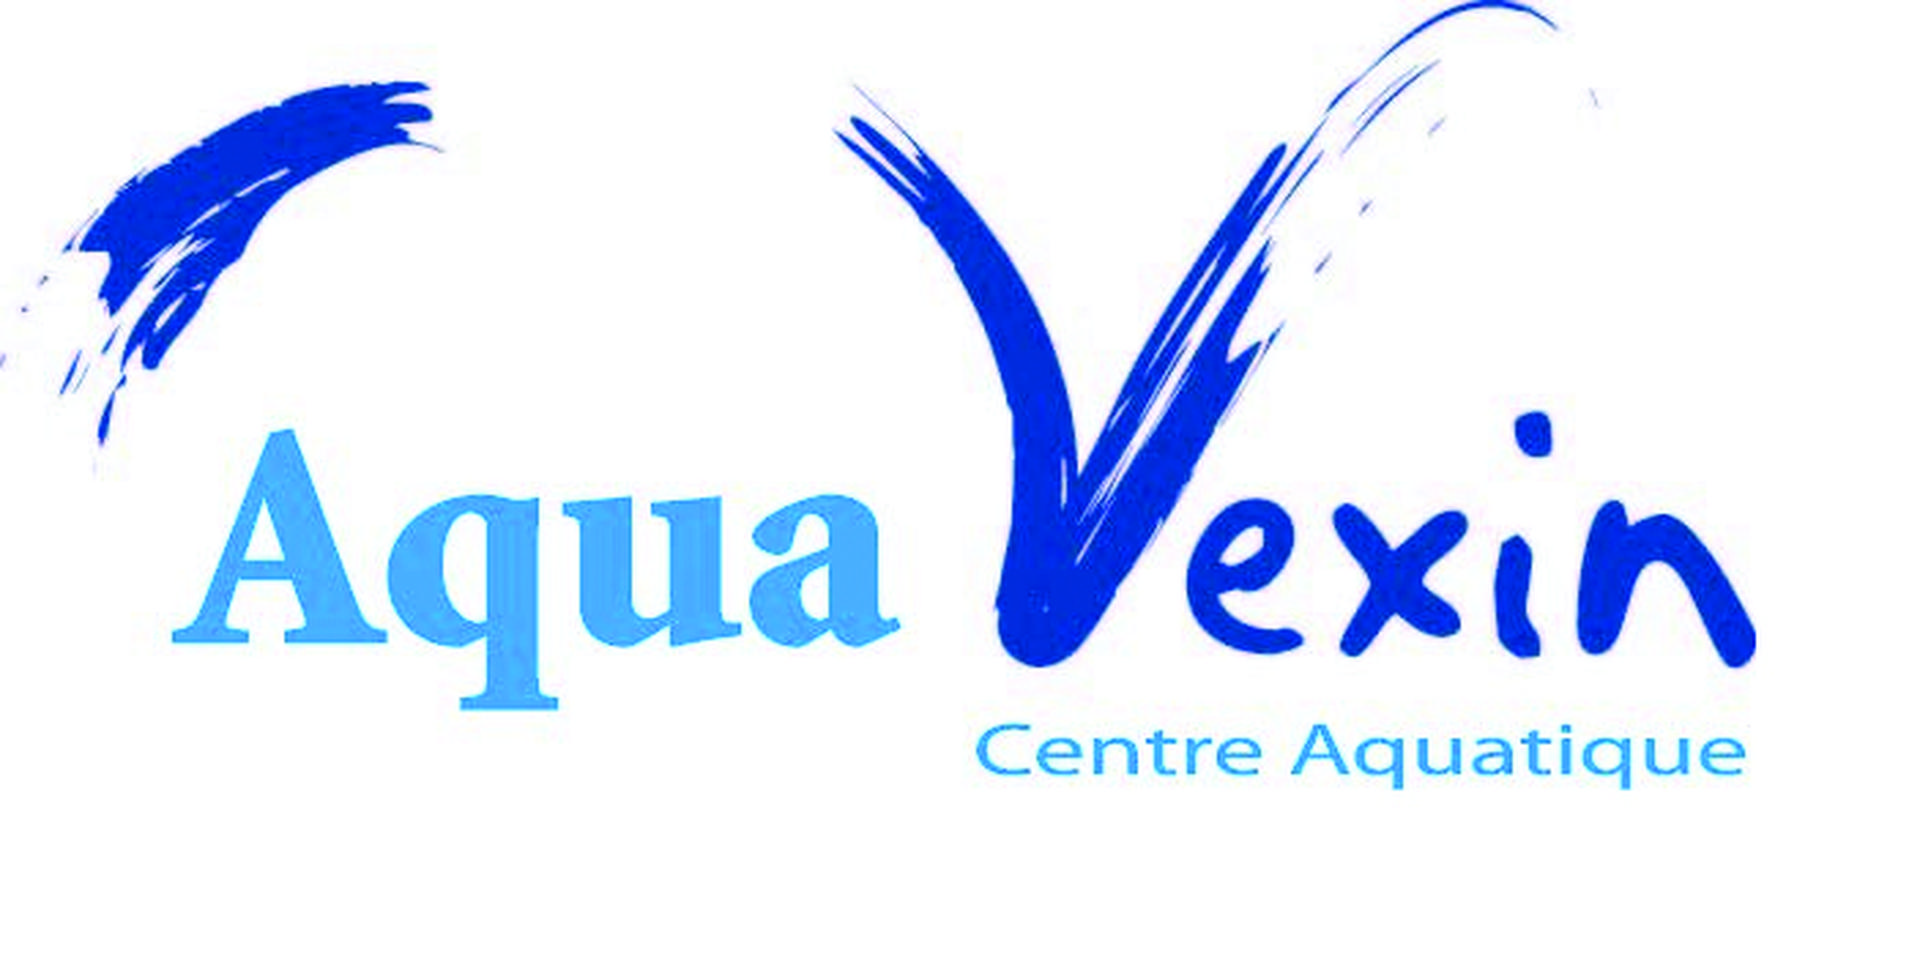 Aquavexin